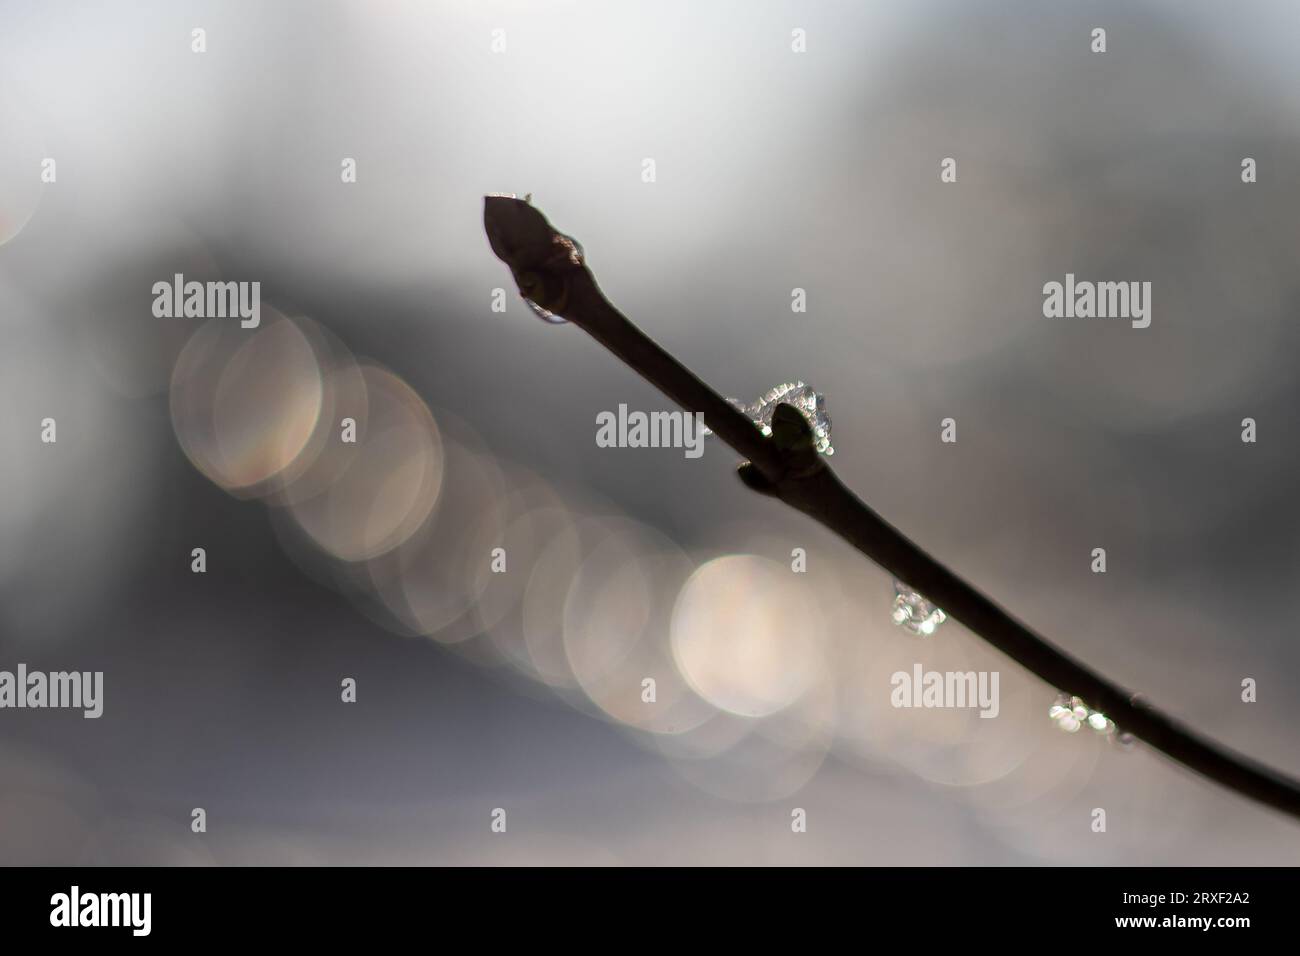 Die Silhouette eines Zweiges oder Zweiges, der teilweise mit Raureif oder Eis bedeckt ist, mit leichten Fackeln im verschwommenen Hintergrund Stockfoto